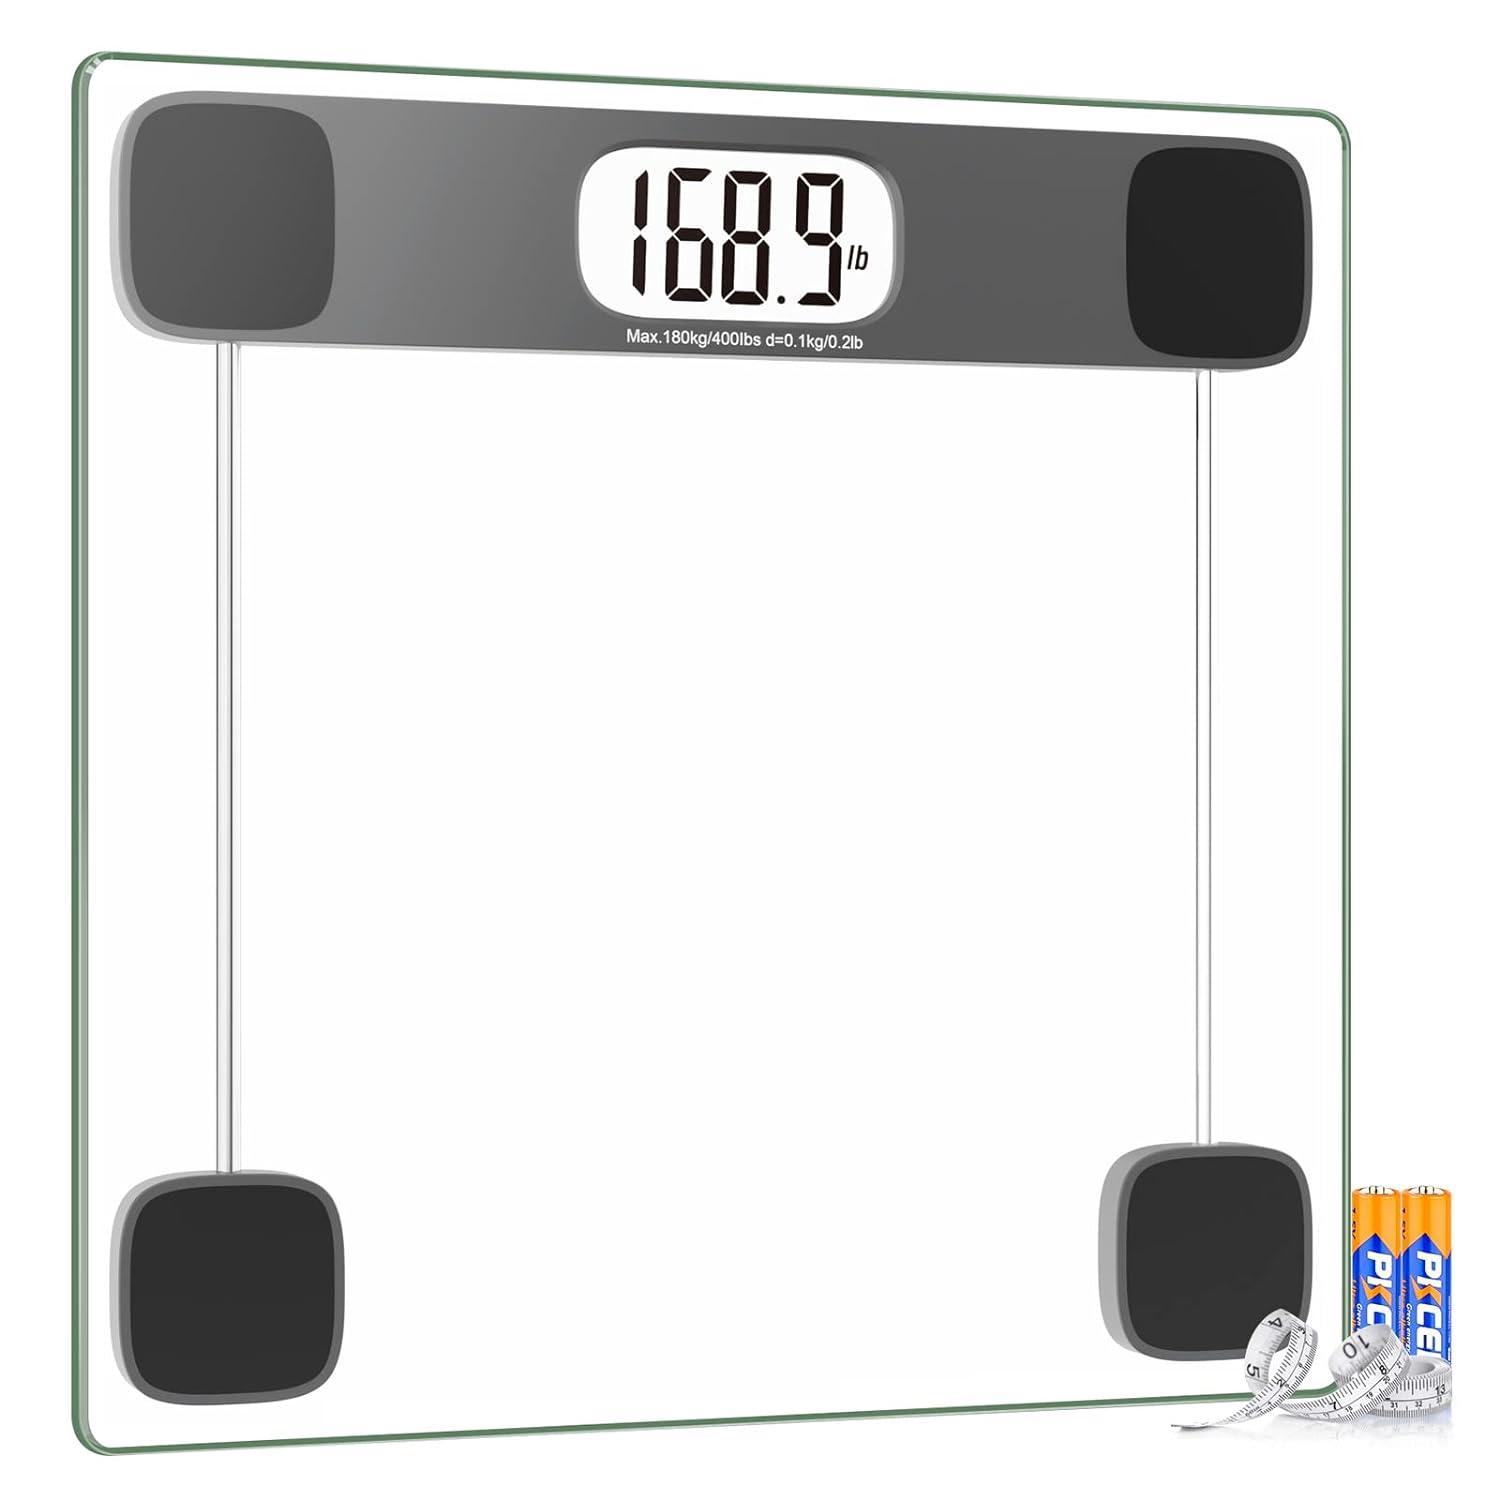 Báscula digital para peso corporal báscula de baño báscula de peso